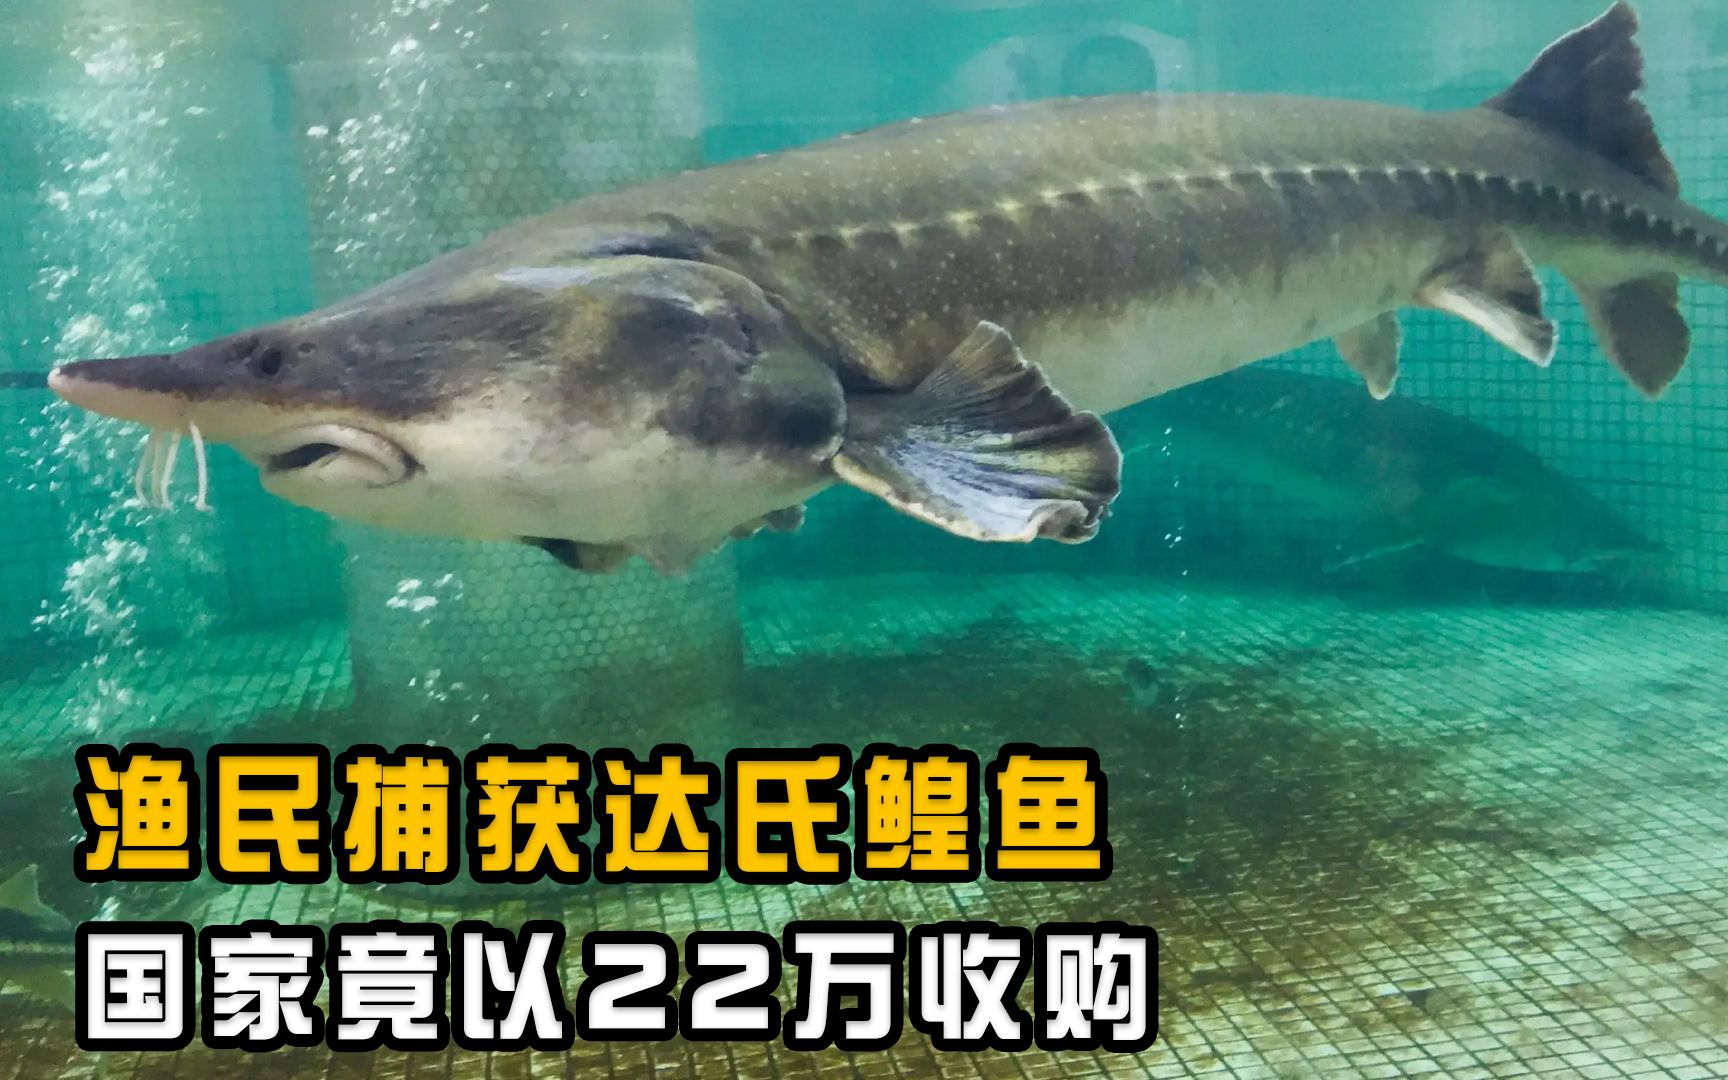 1028斤达氏鳇被渔民误捕，国家以22万元收购，这鱼为何这么贵？